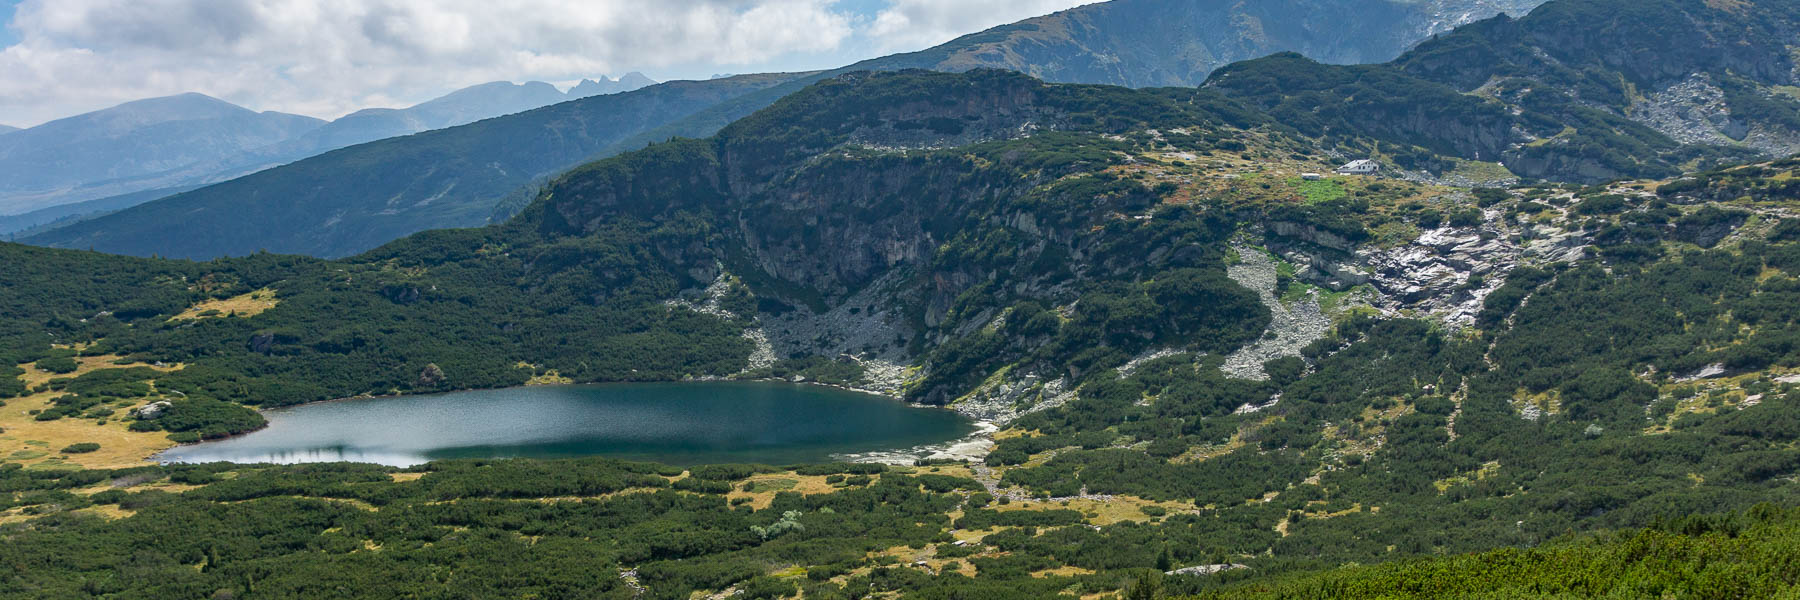 Massif de Rila : lac inférieur et refuge Sedemte